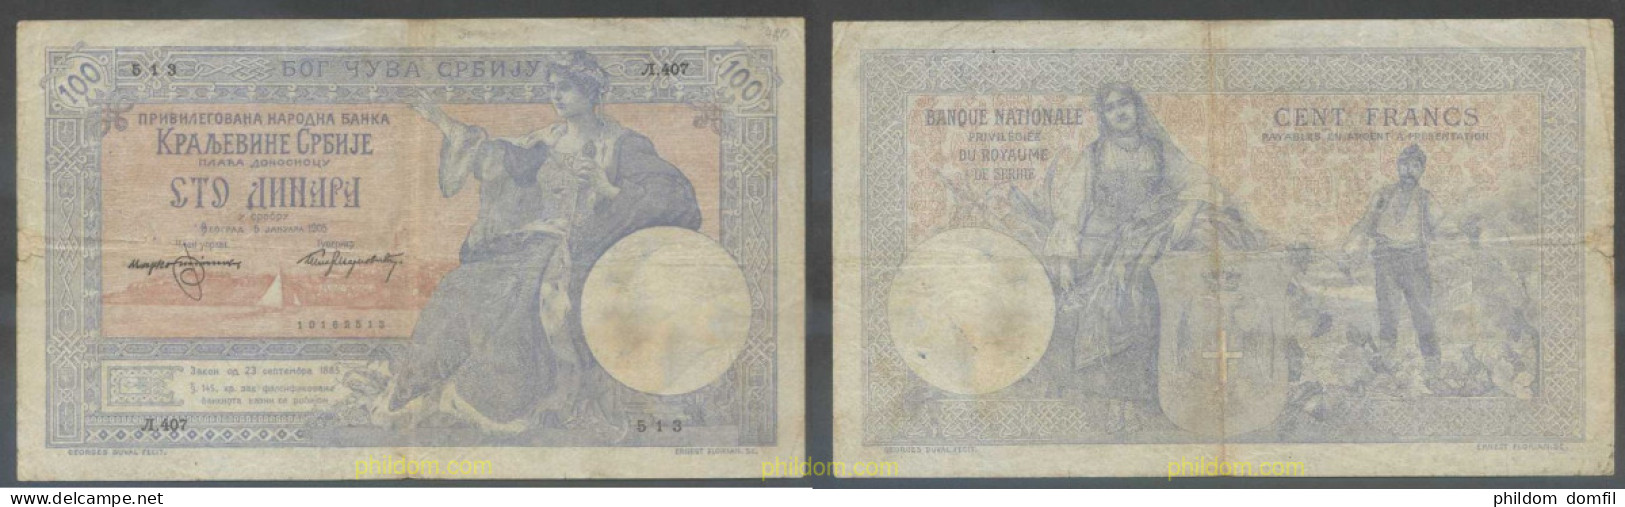 7528 SERBIA 1905 SERBIE 100 DINARA 1905 - Serbia